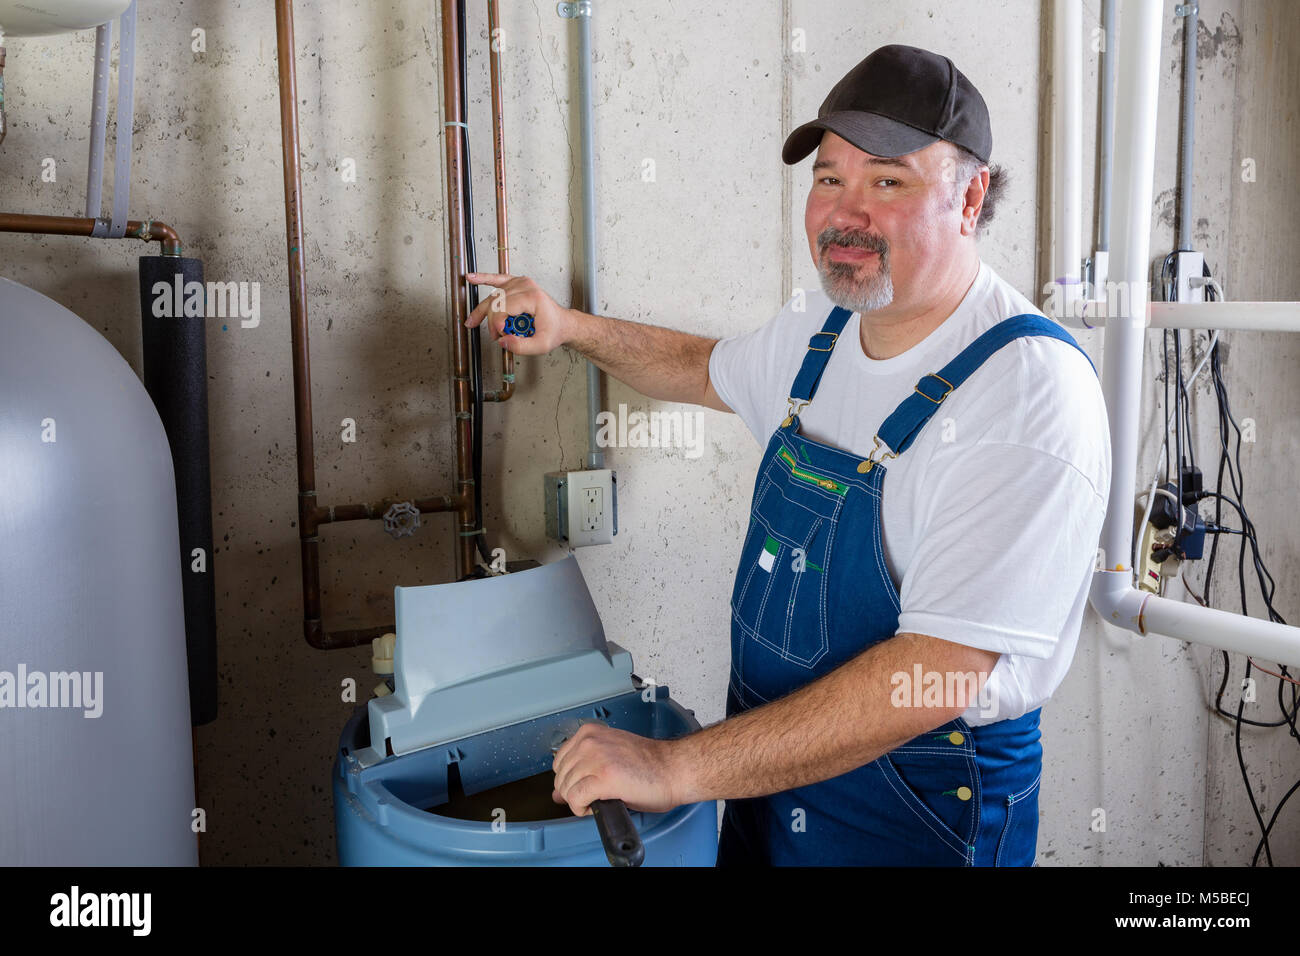 Freundlich lächelnden Workman in Latzhosen installieren oder die Arbeit an einem Wasserenthärter in einem Hauswirtschaftsraum drehen zu lächeln in die Kamera Stockfoto